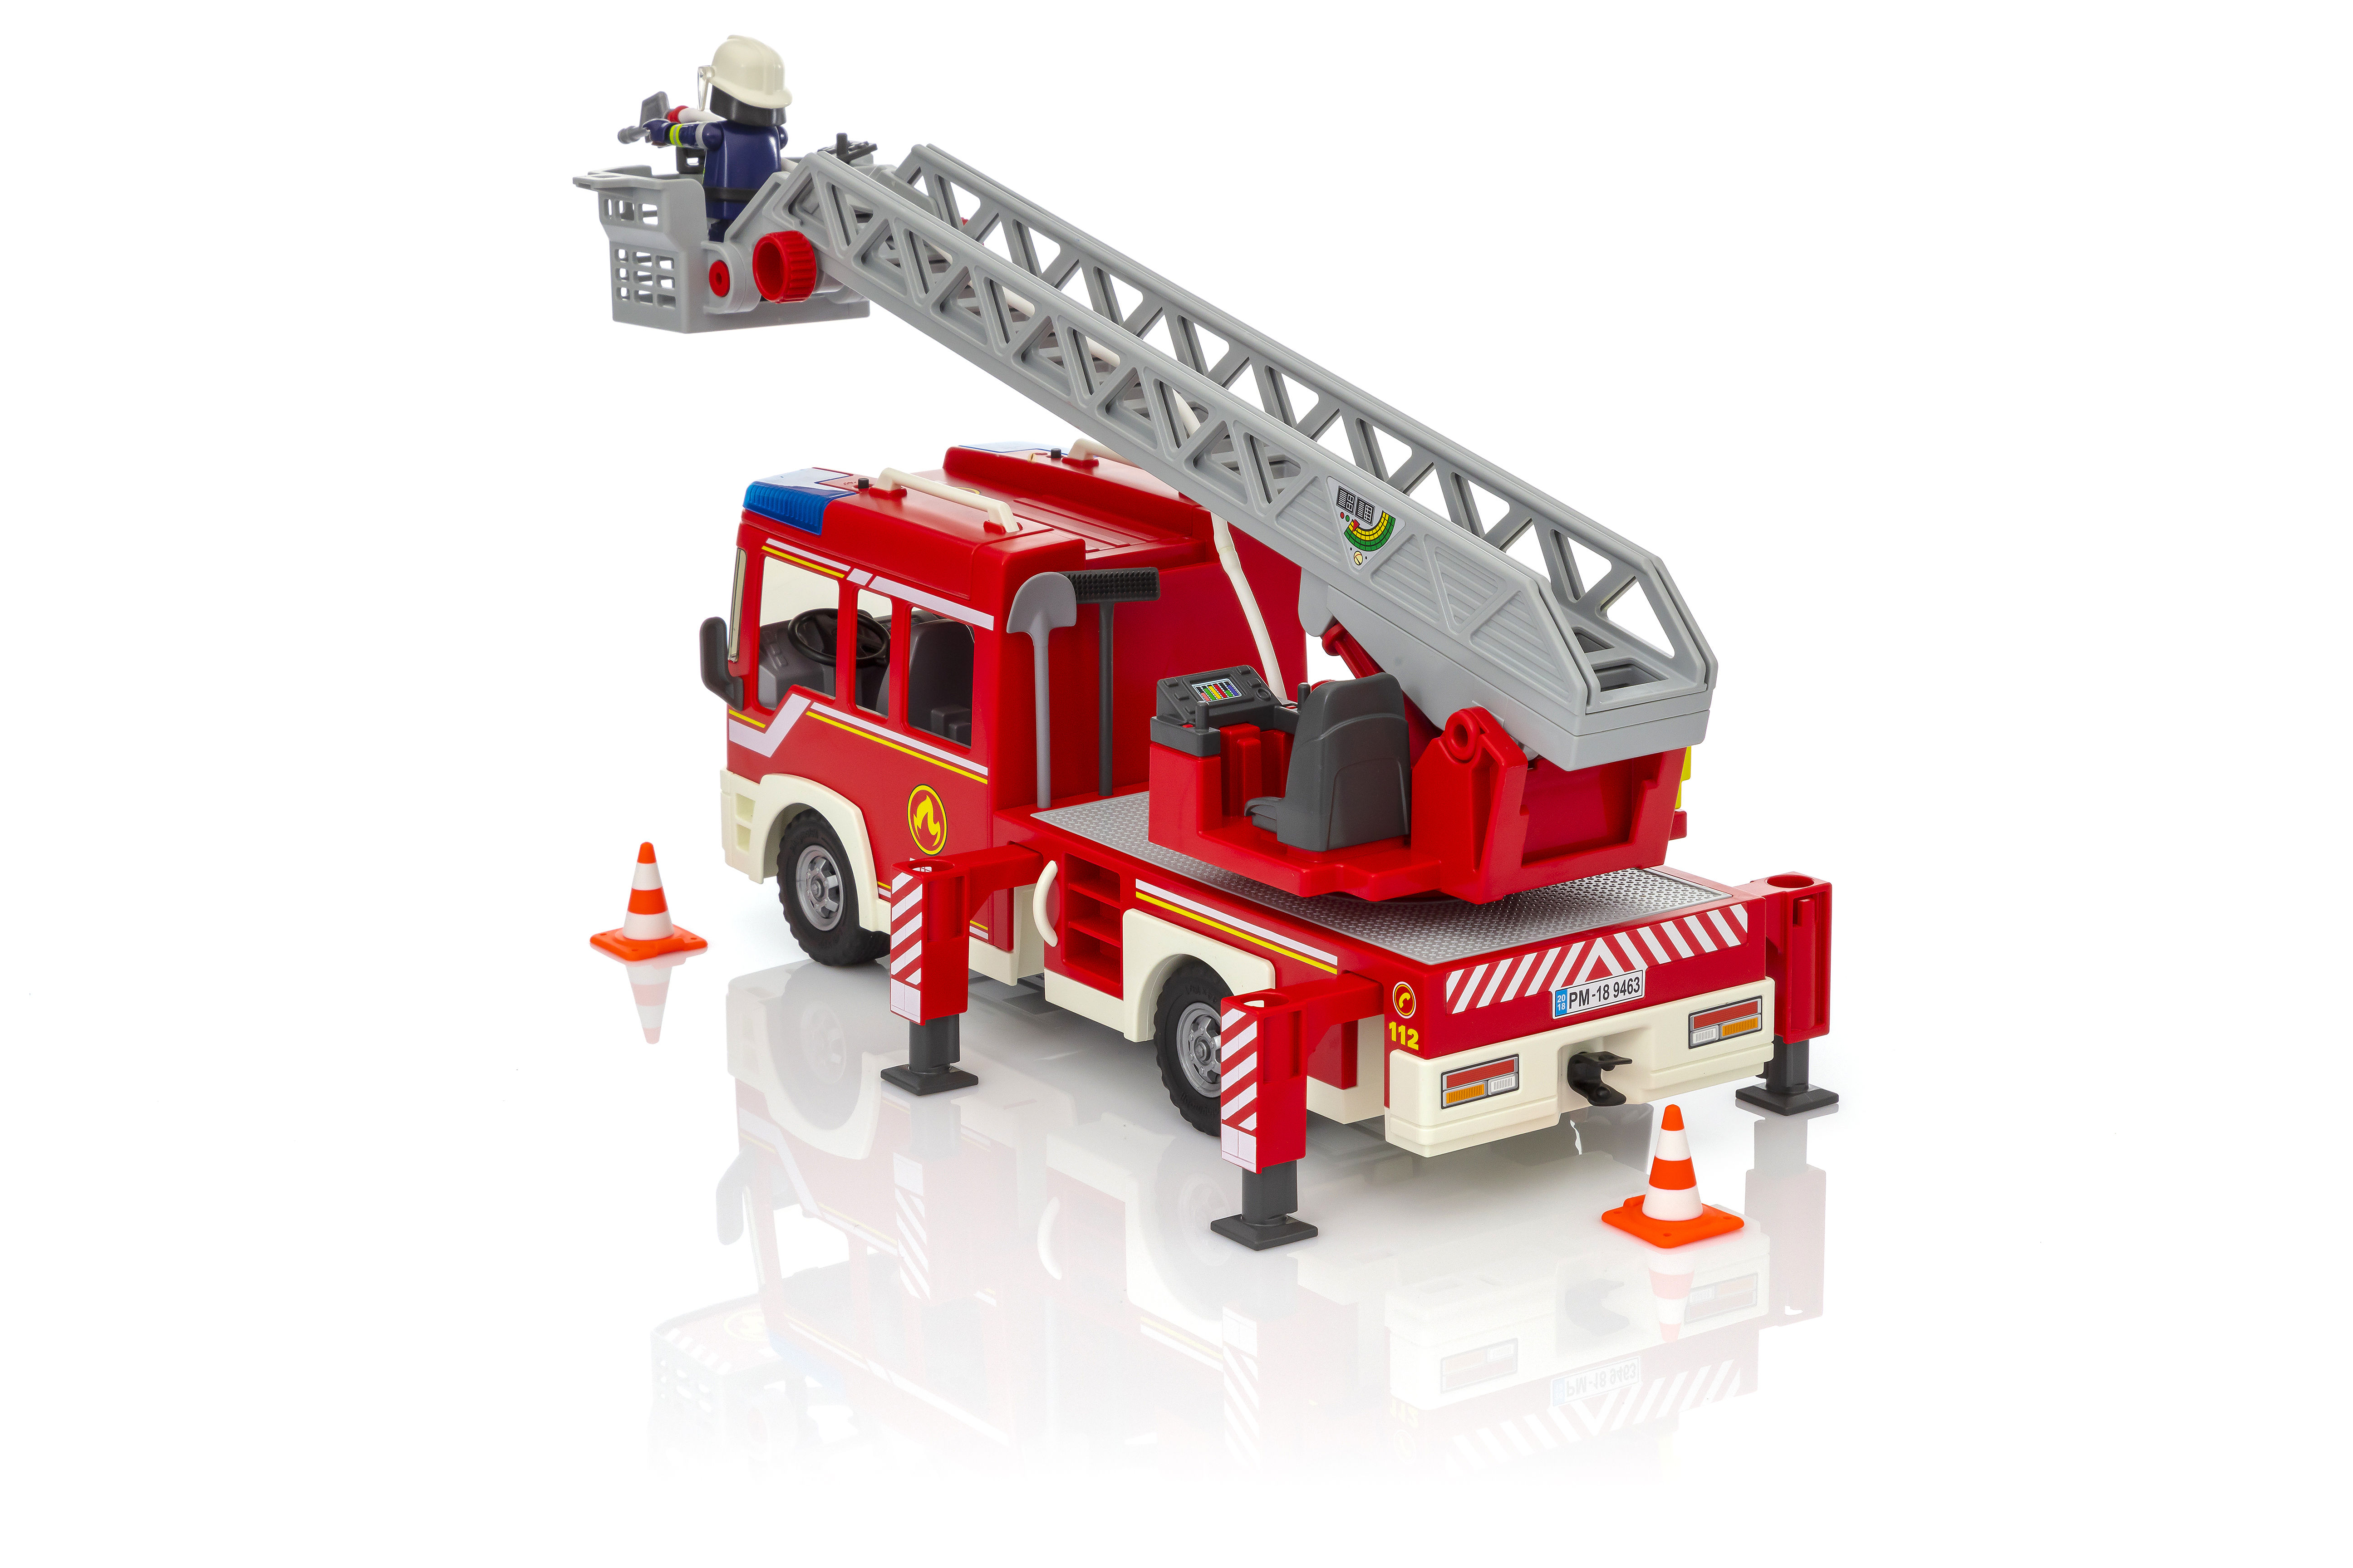 Playmobil 9463 City Action : Camion de pompiers avec échelle pivotante -  Jeux et jouets Playmobil - Avenue des Jeux